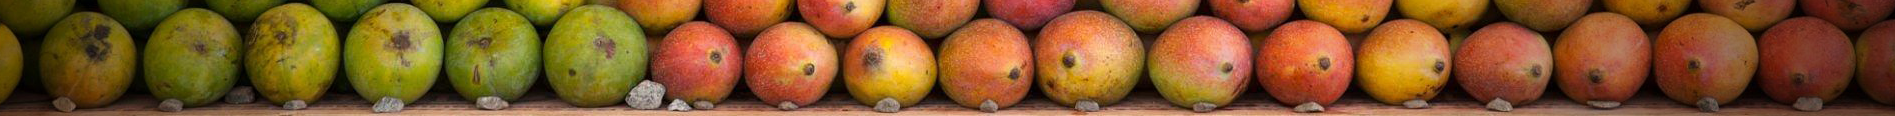 Australian mangoking Mangoes